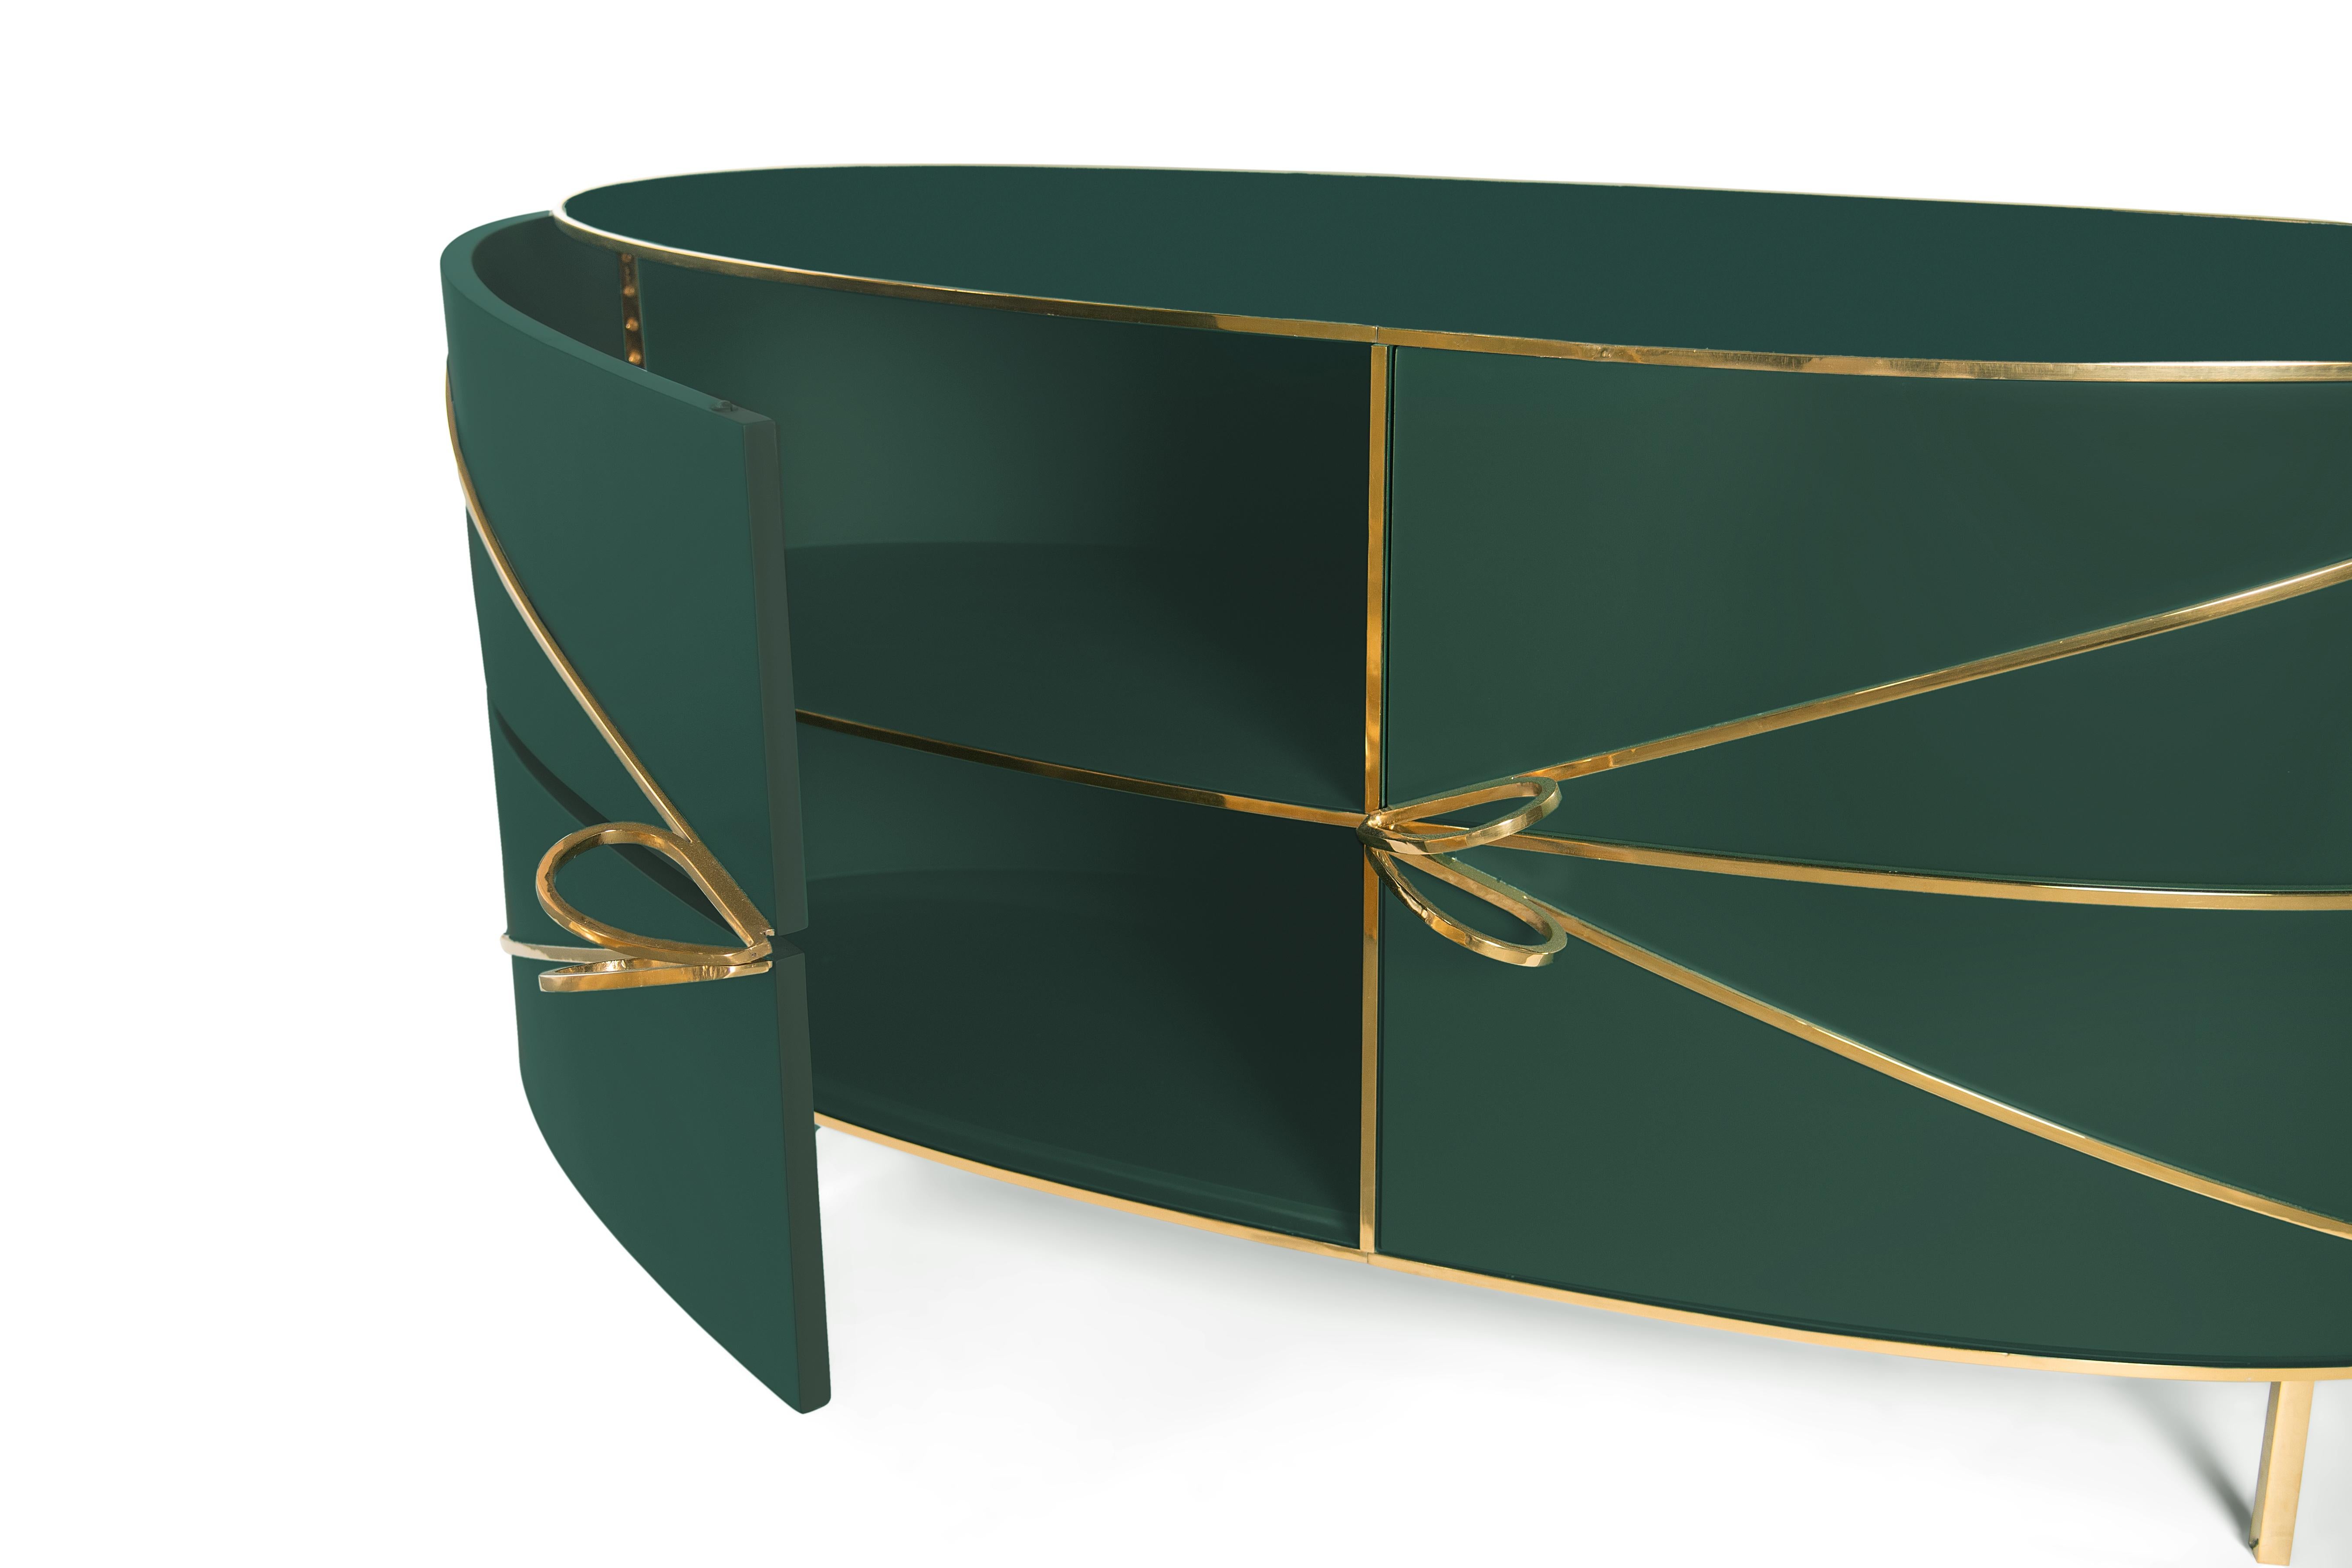 88 Secrets Green Sideboard with Gold Trims von Nika Zupanc ist ein tiefgrüner Schrank mit sinnlichen, femininen Linien und luxuriösen Metallverzierungen in Gold. Ein Blickfang in jedem Innenraum! 

Nika Zupanc, eine auffallend renommierte